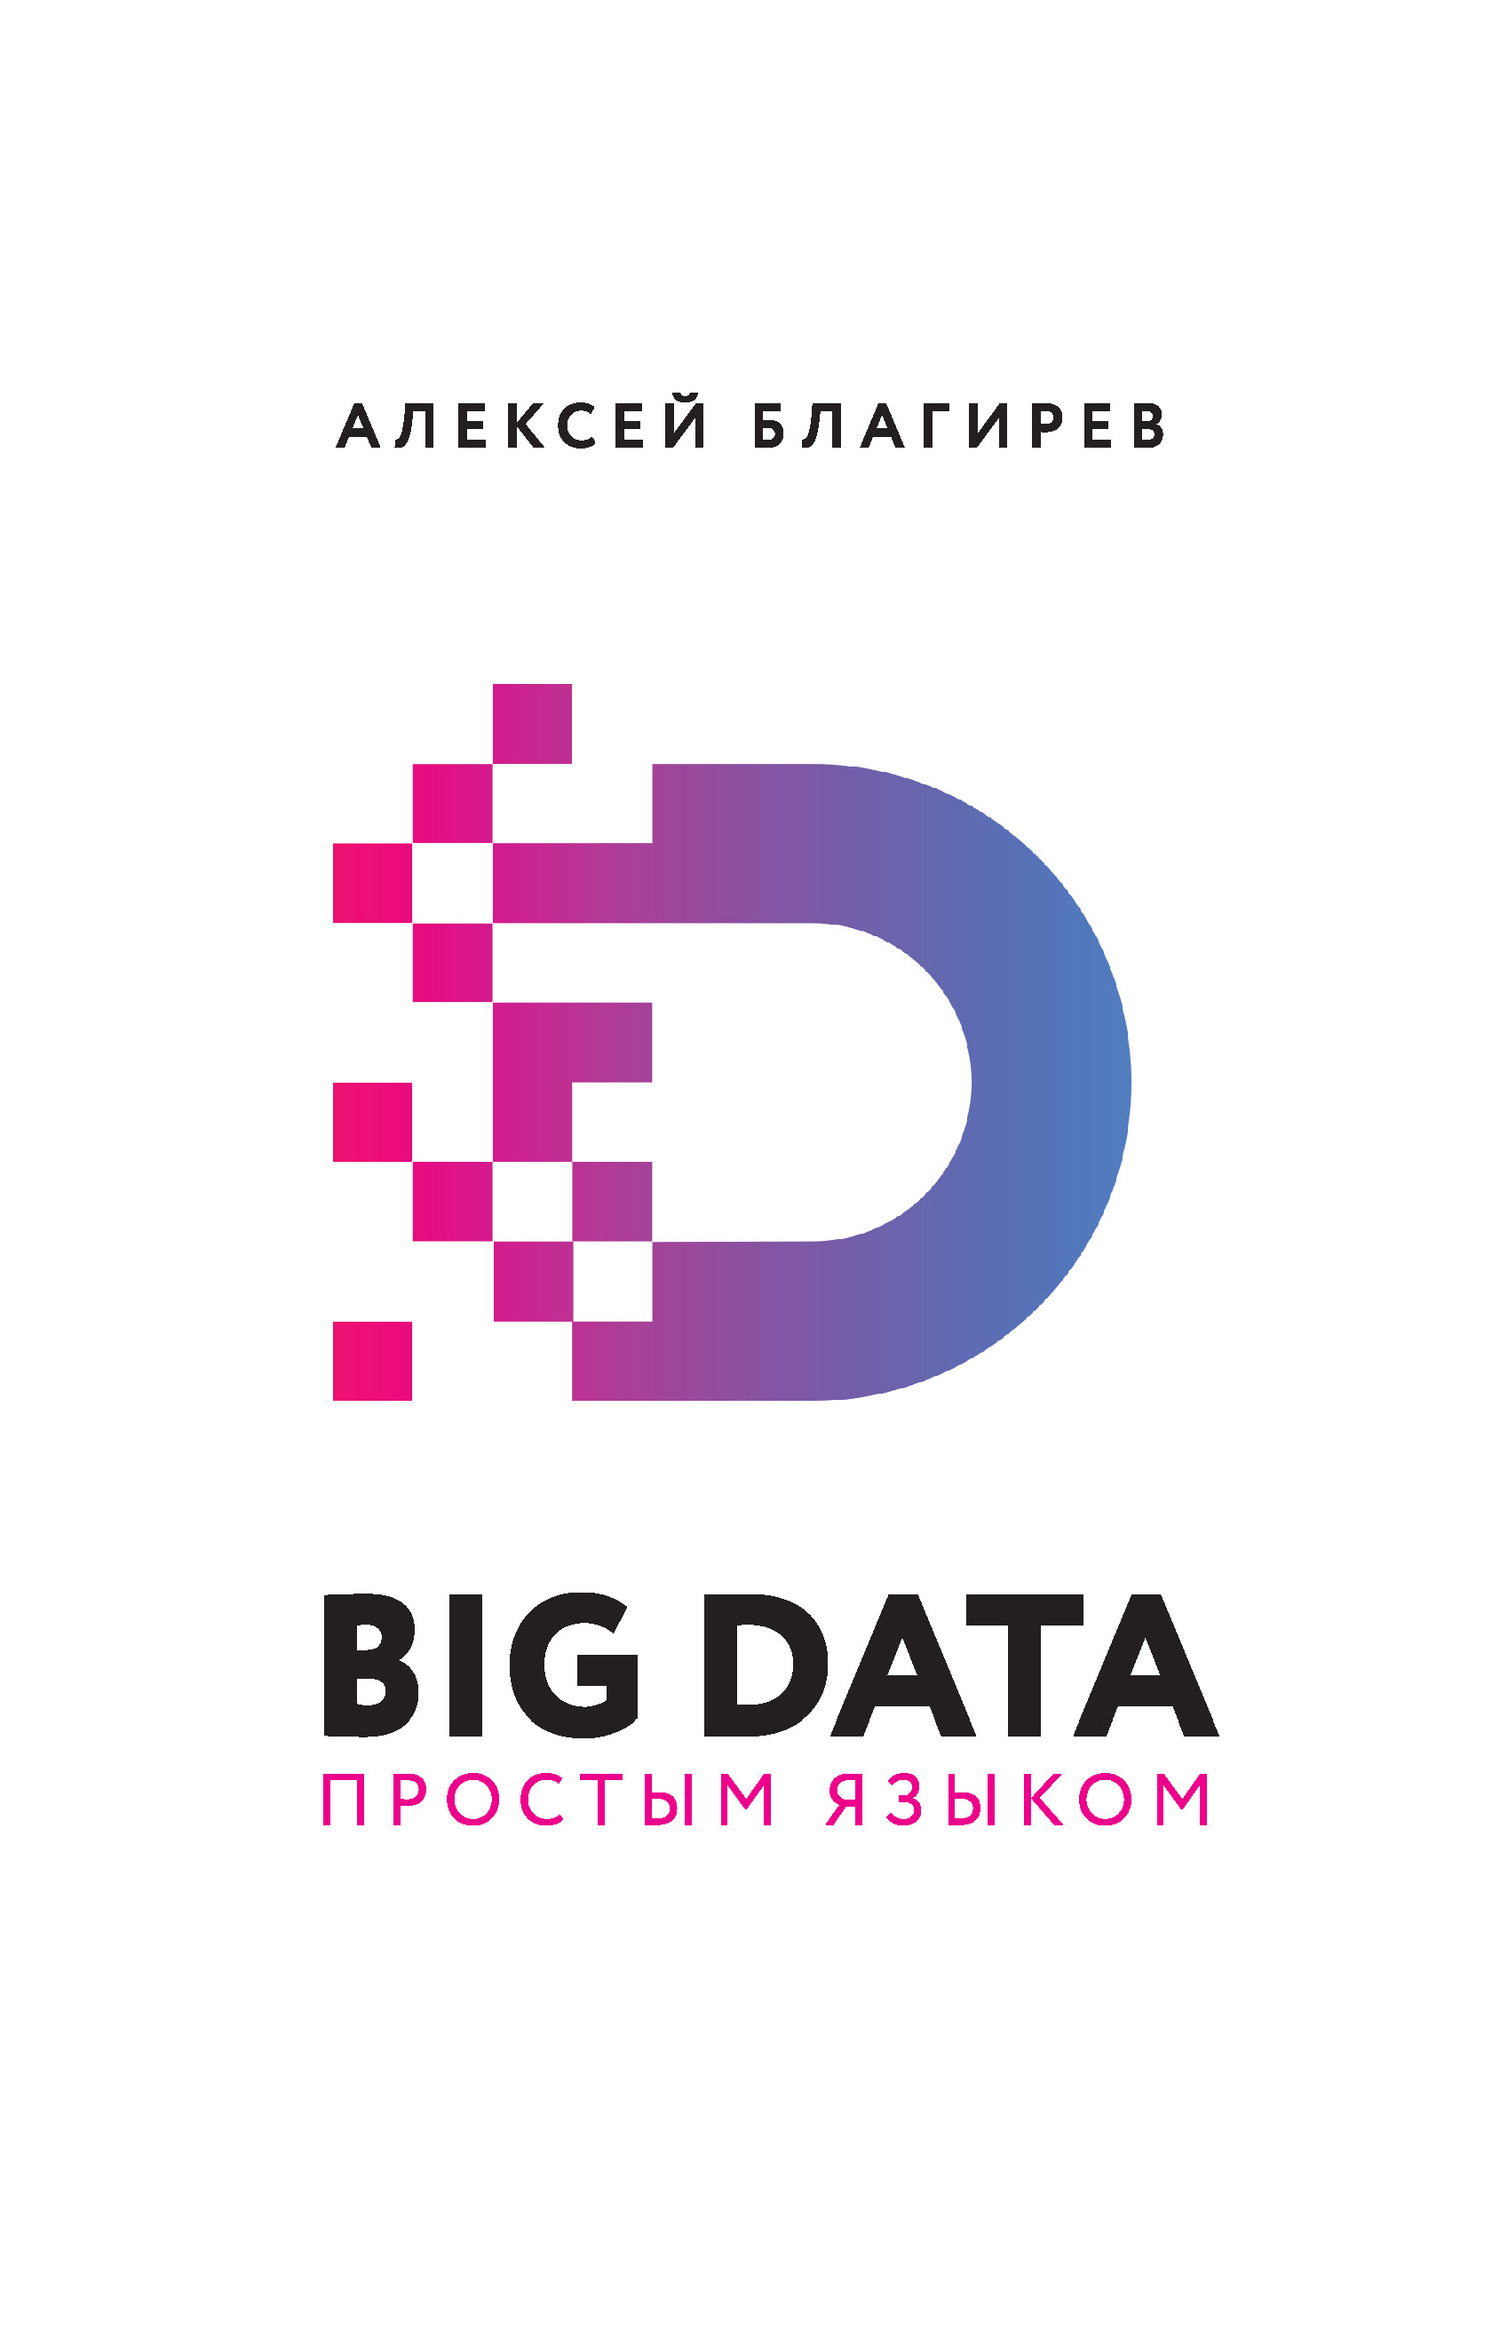 Благирев Алексей - Big data простым языком скачать бесплатно